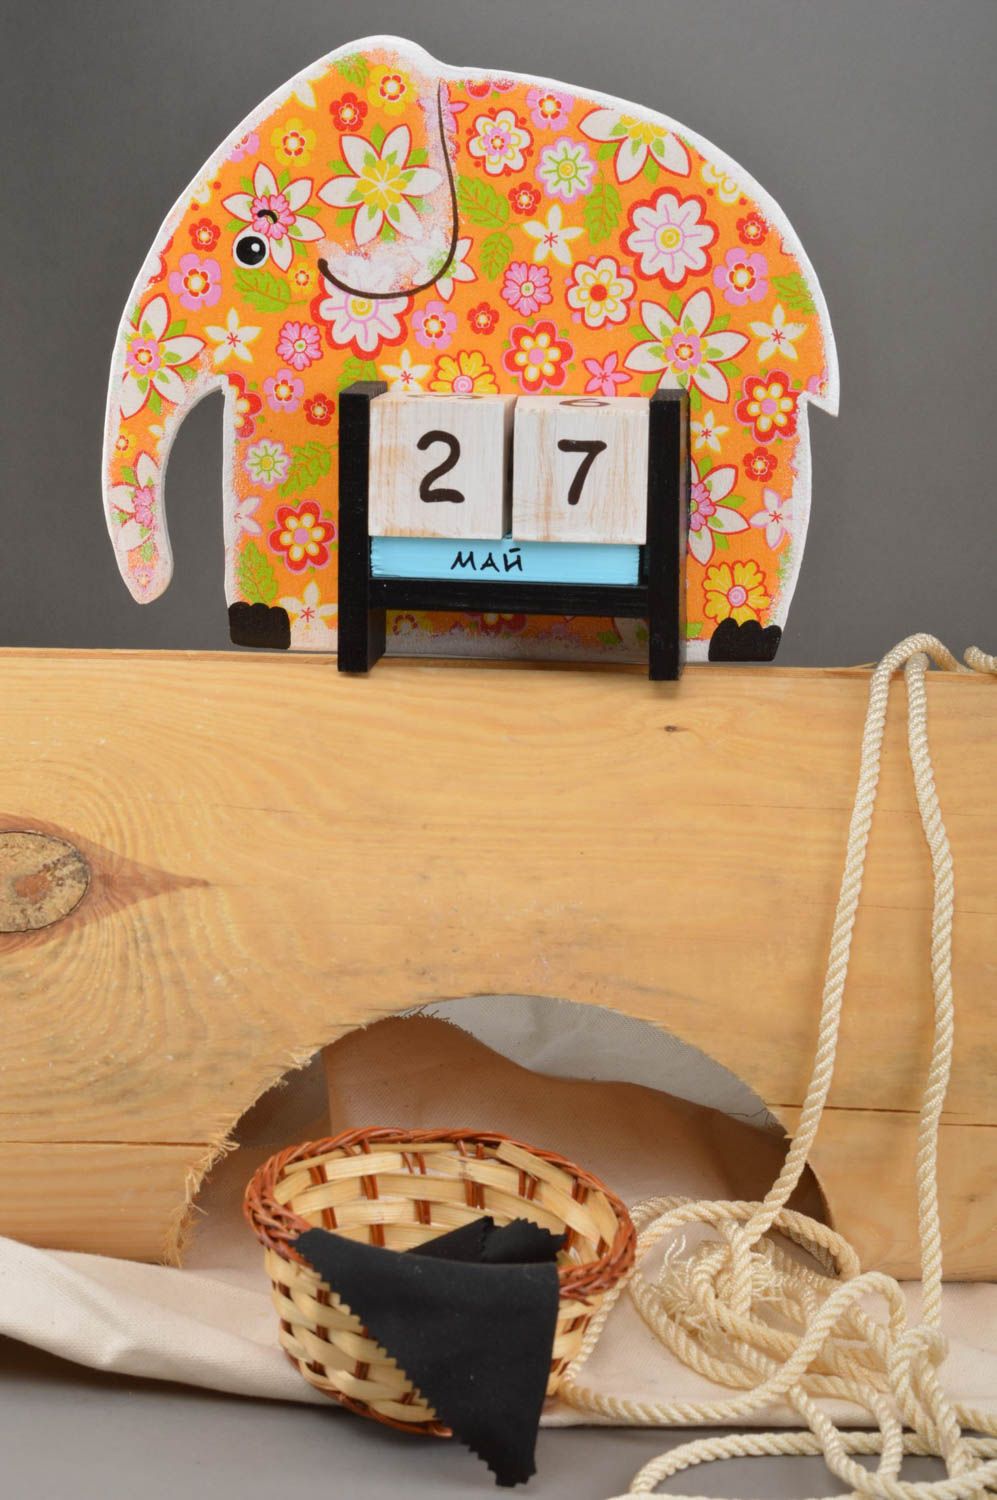 Handmade calendar for kids unusual toy elephant stylish table decor ideas photo 1